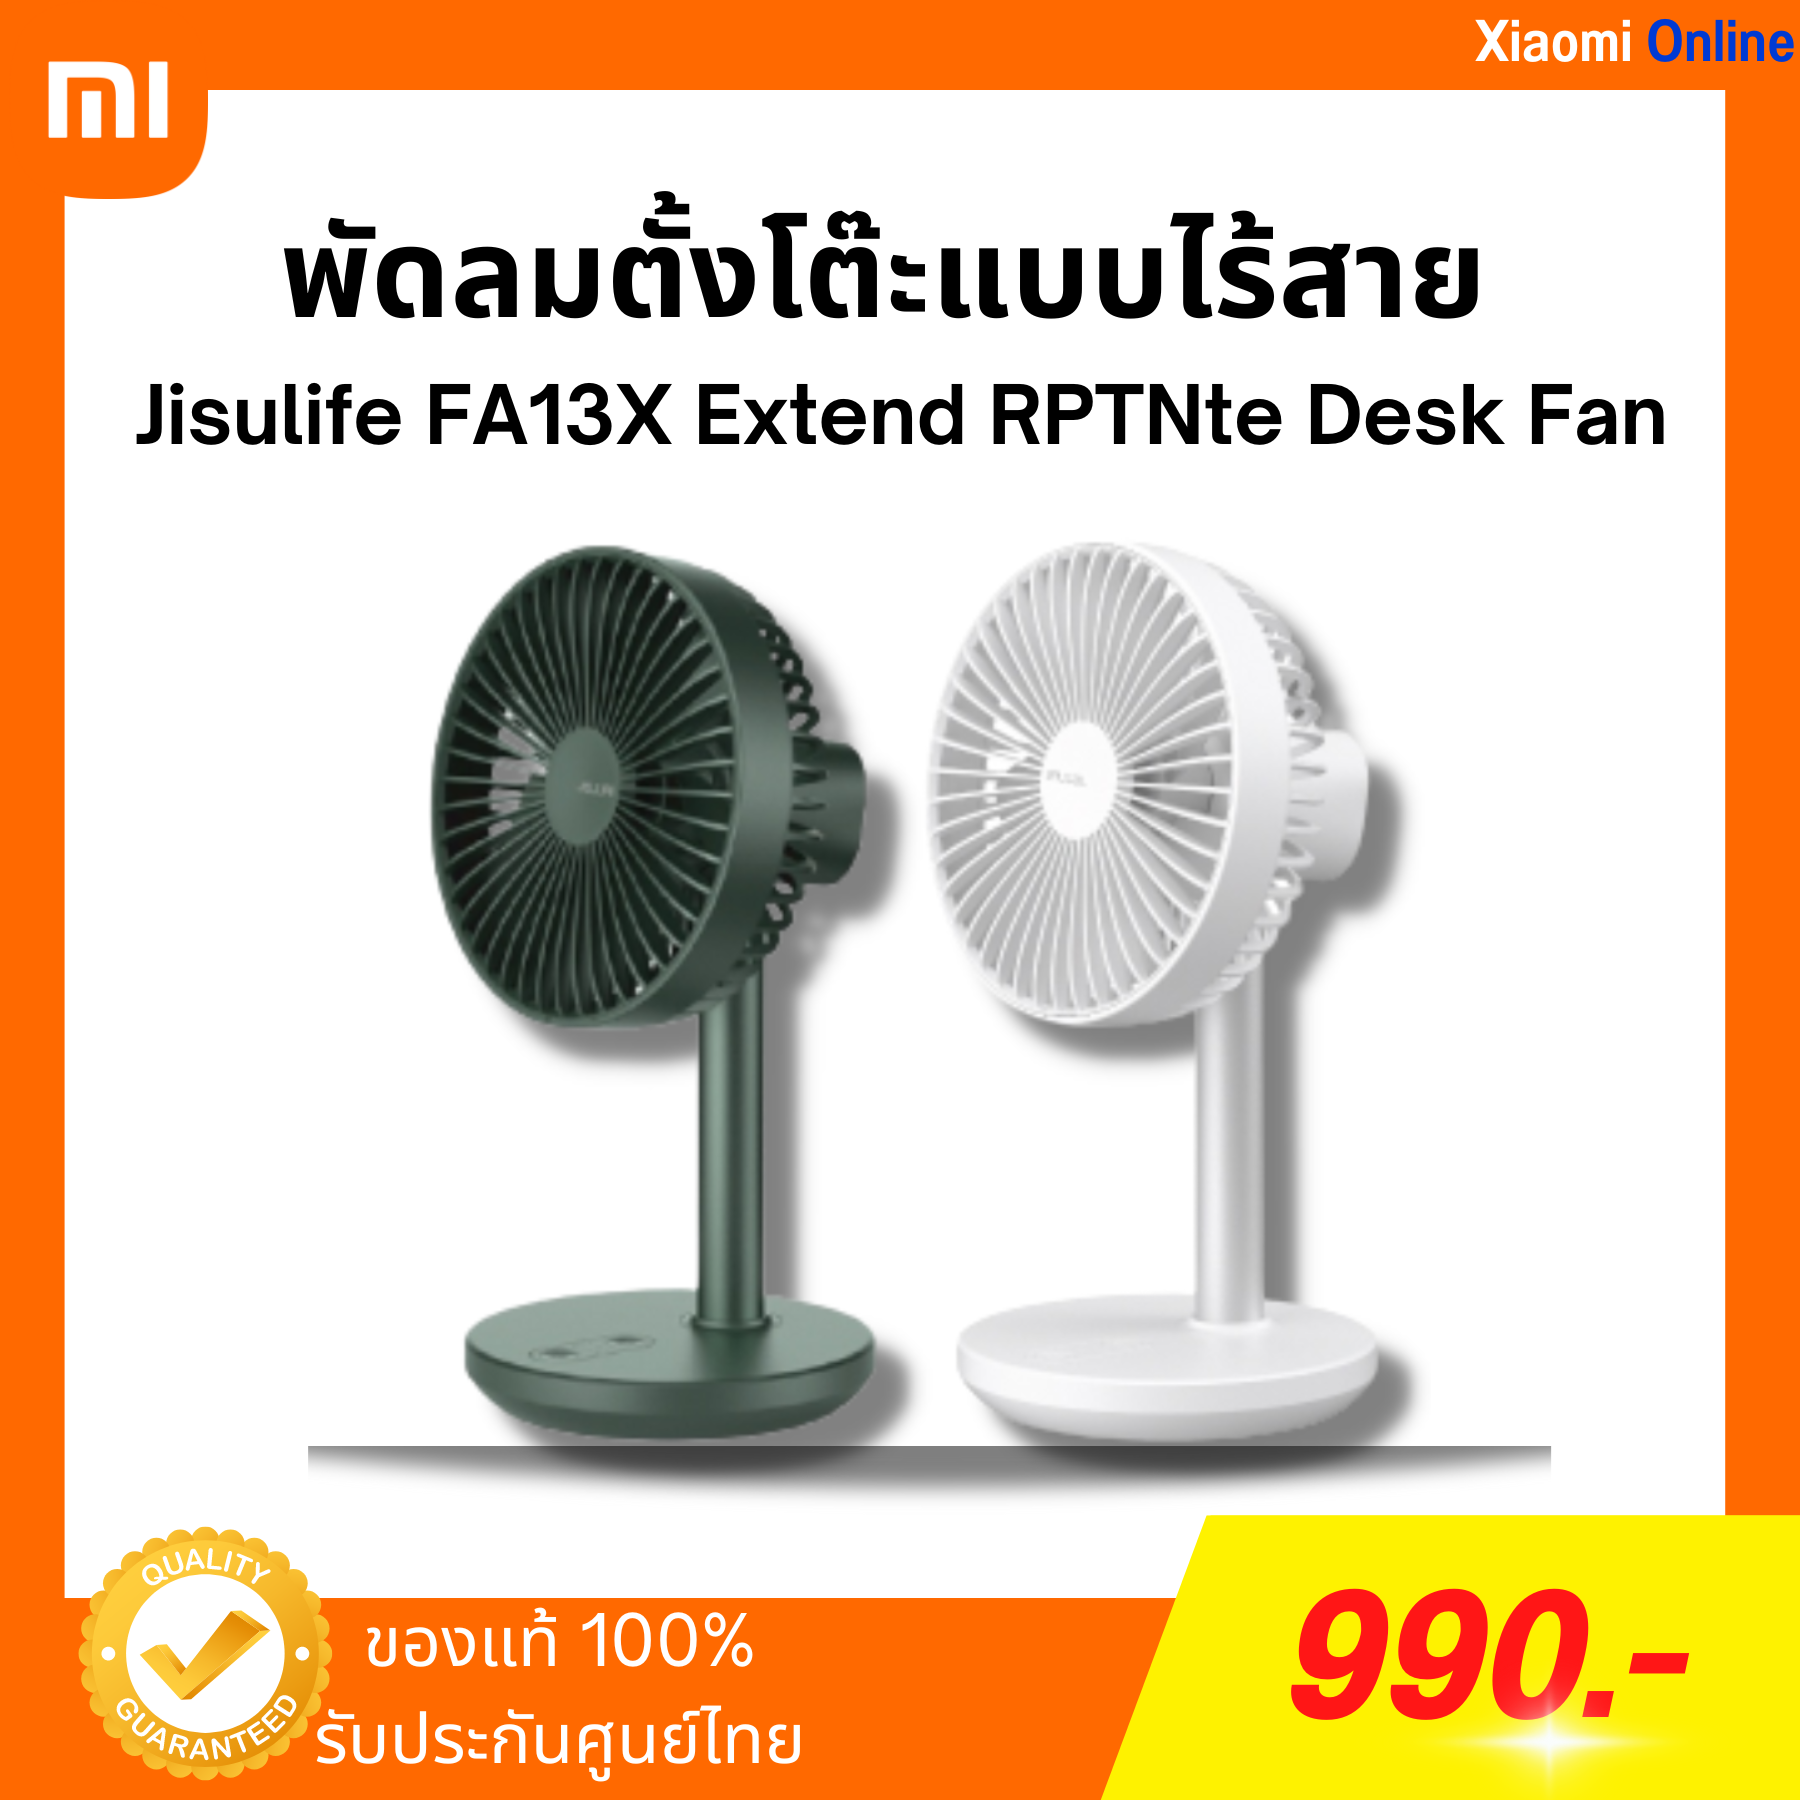 พัดลมตั้งโต๊ะแบบไร้สาย  Jisulife FA13X Extend RPTNte Desk Fan